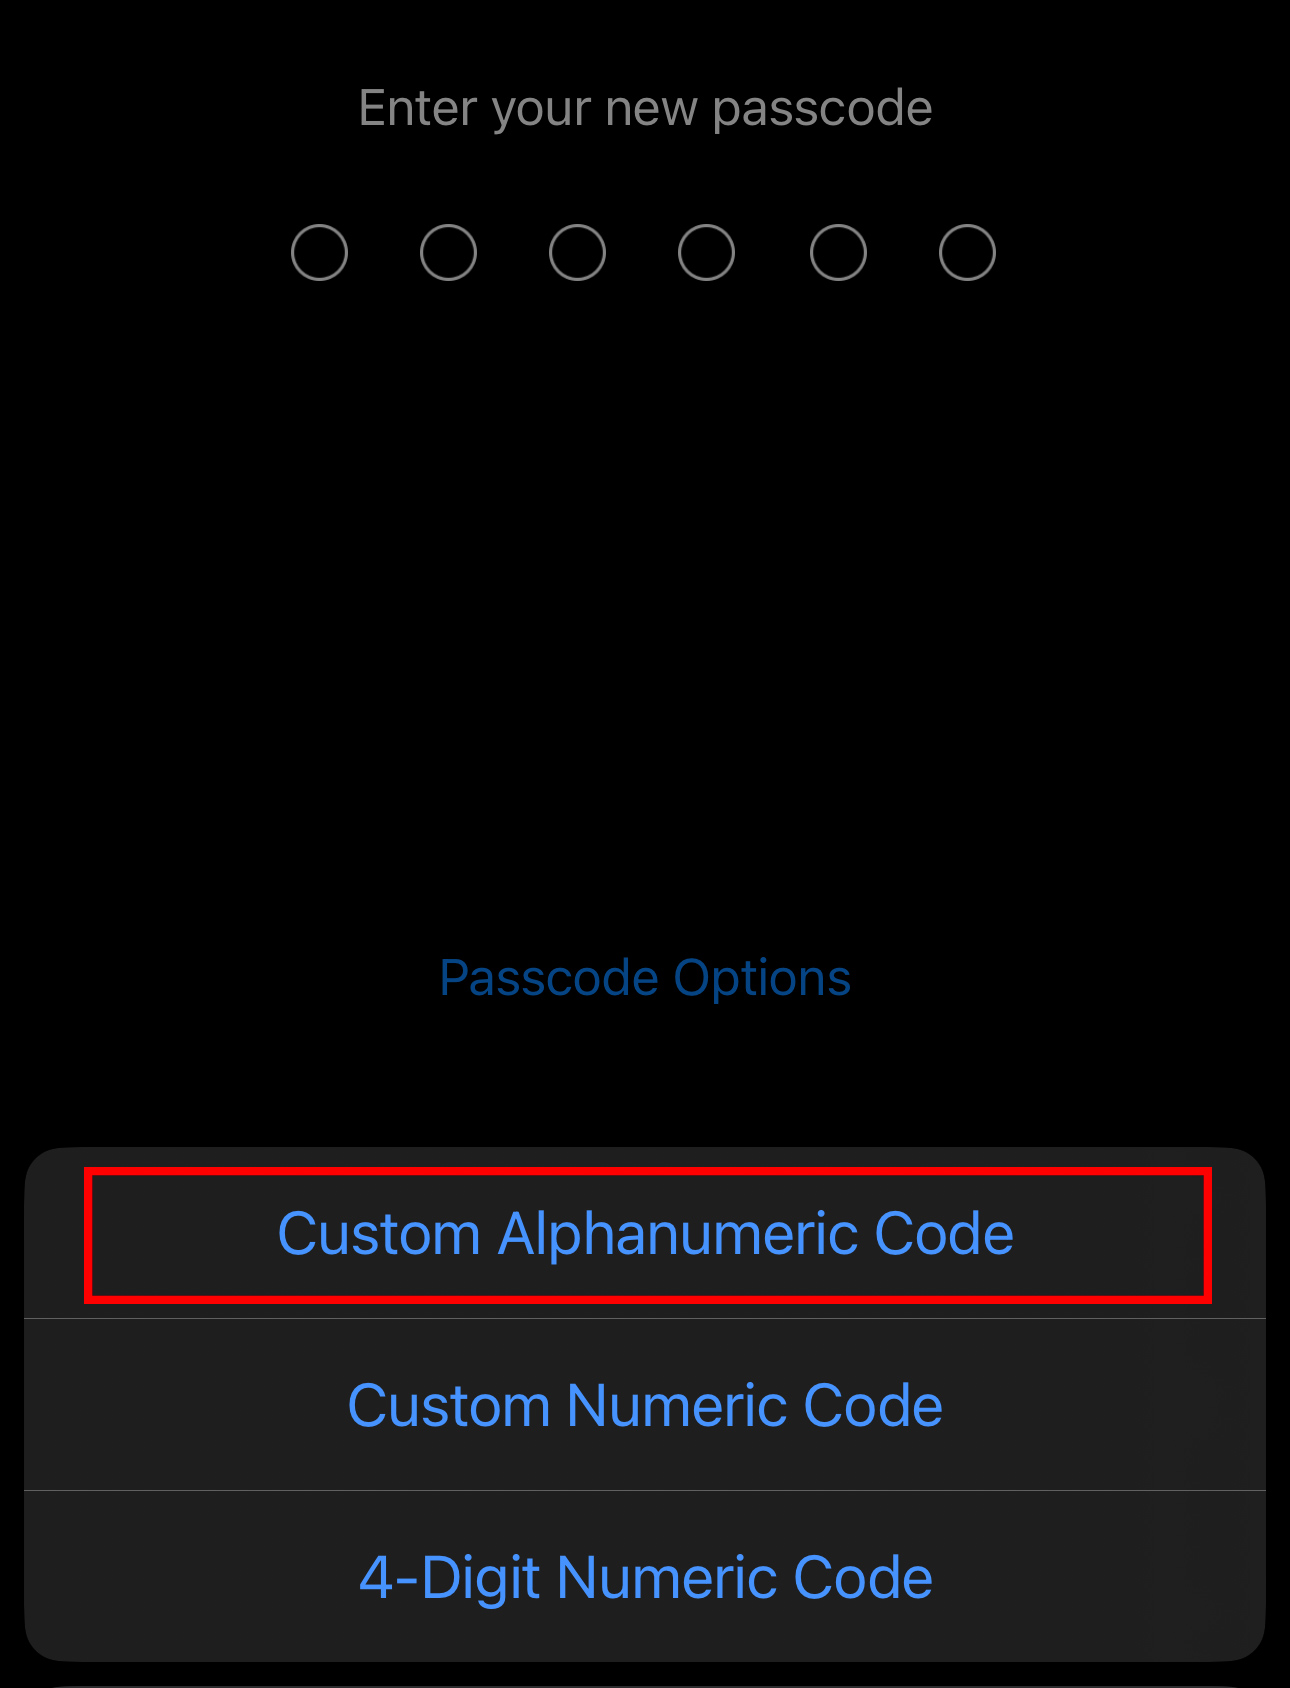 Tùy chọn sử dụng mật khẩu số kết hợp ký tự.